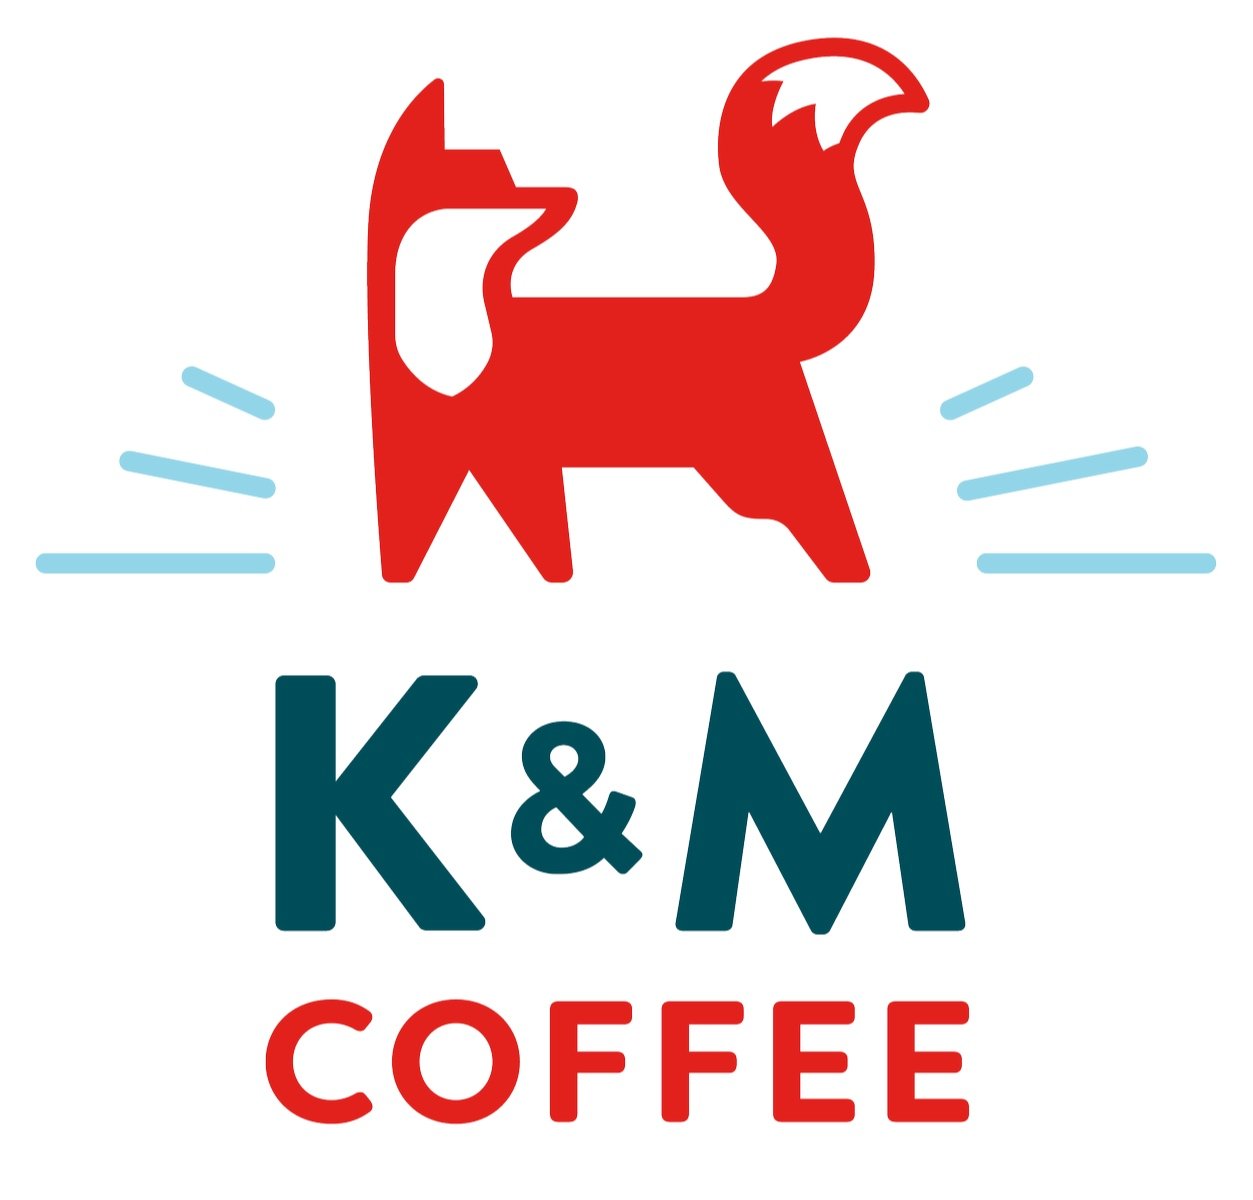 km-logo-02.jpg